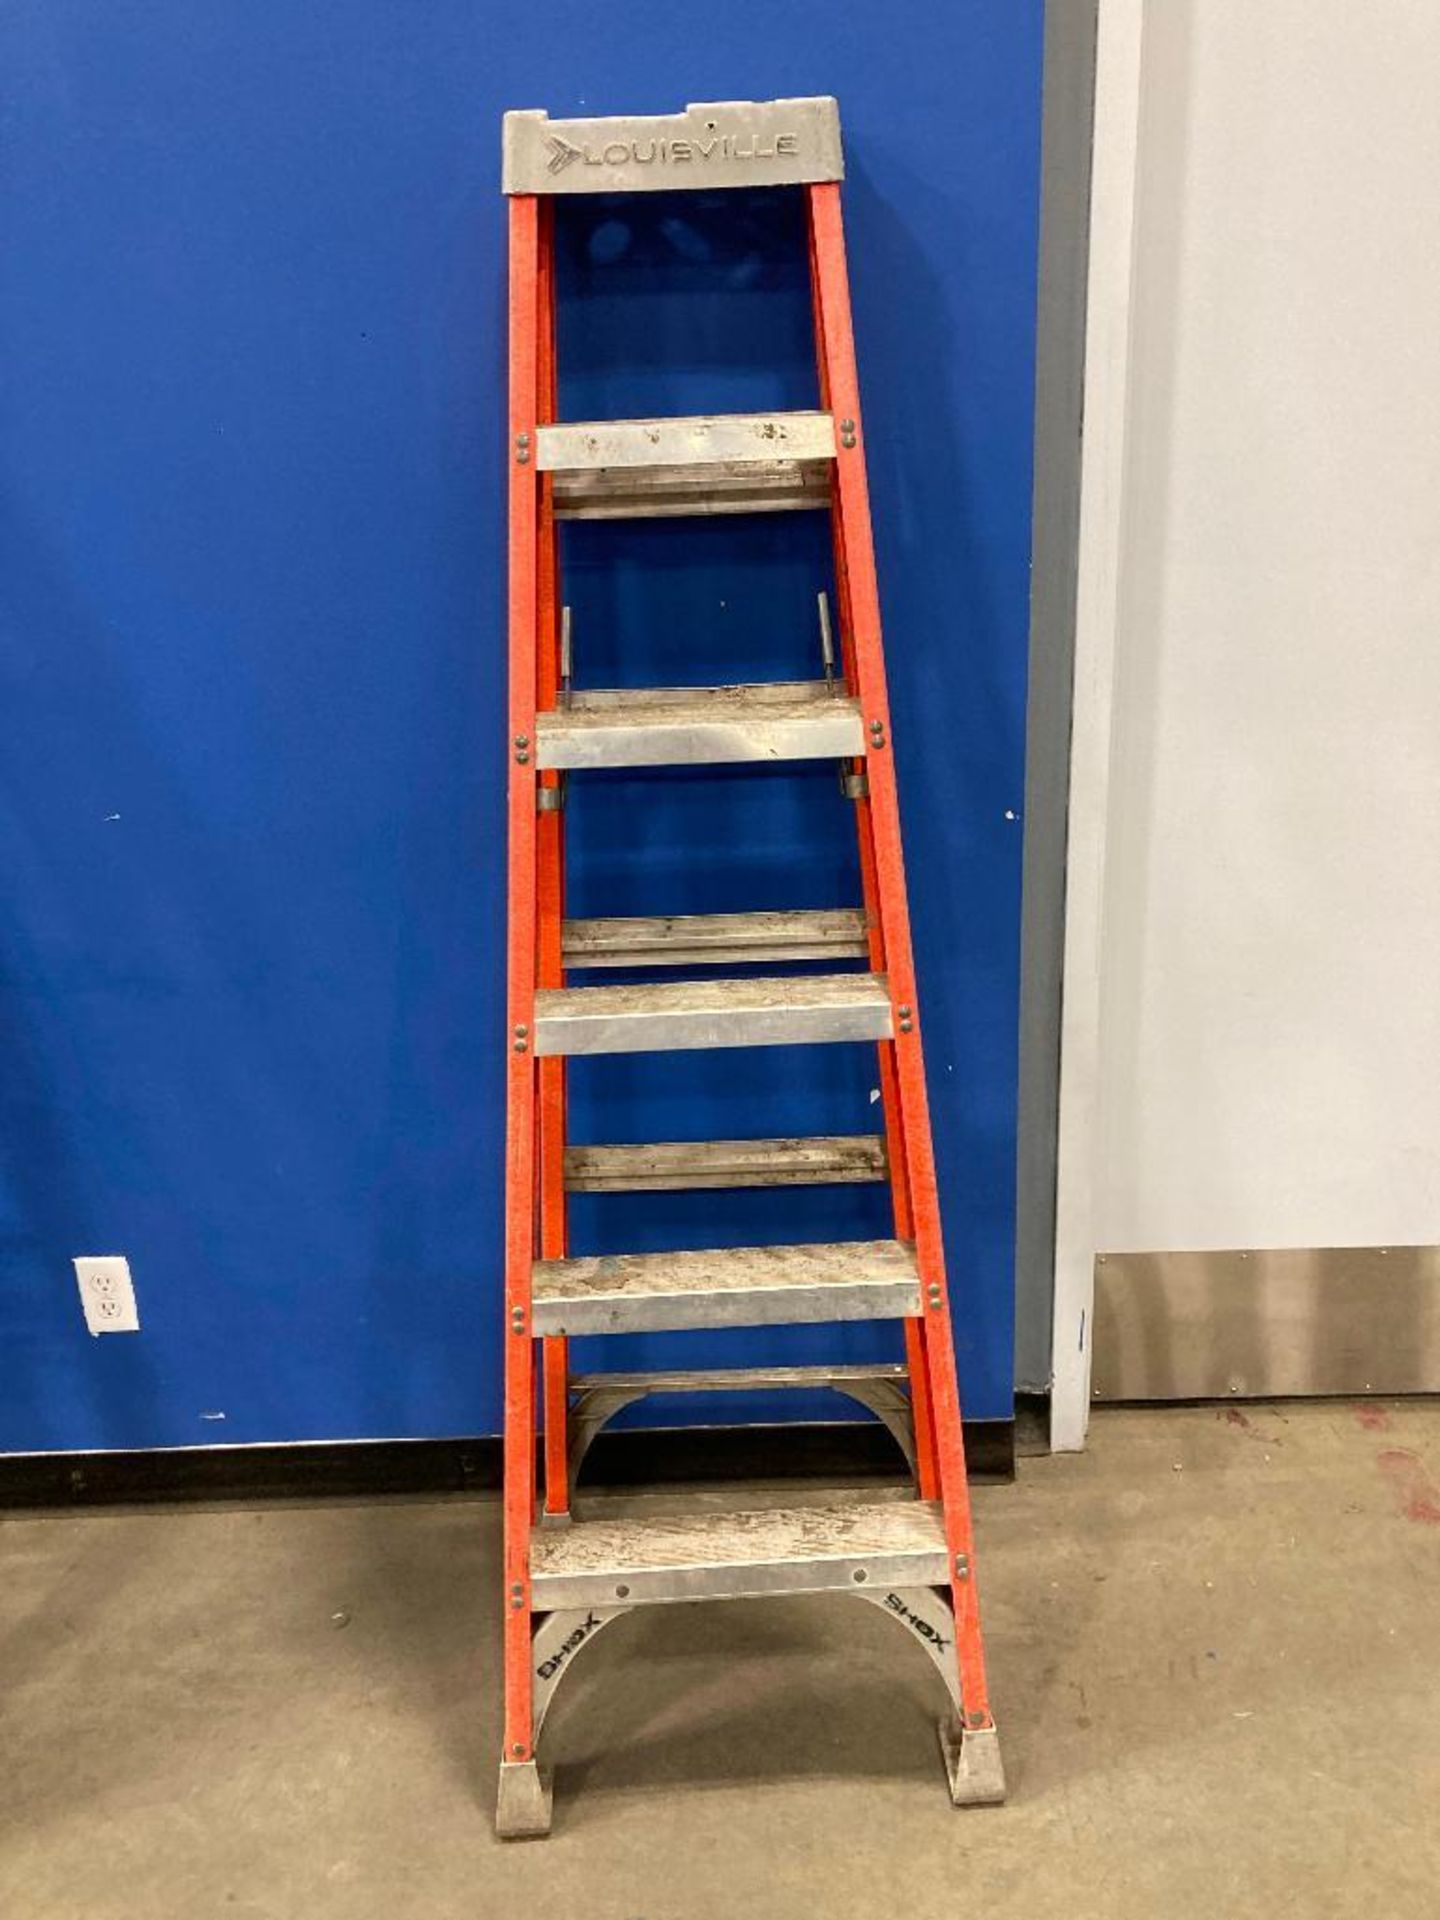 Louisville 6' Fiberglass Step Ladder